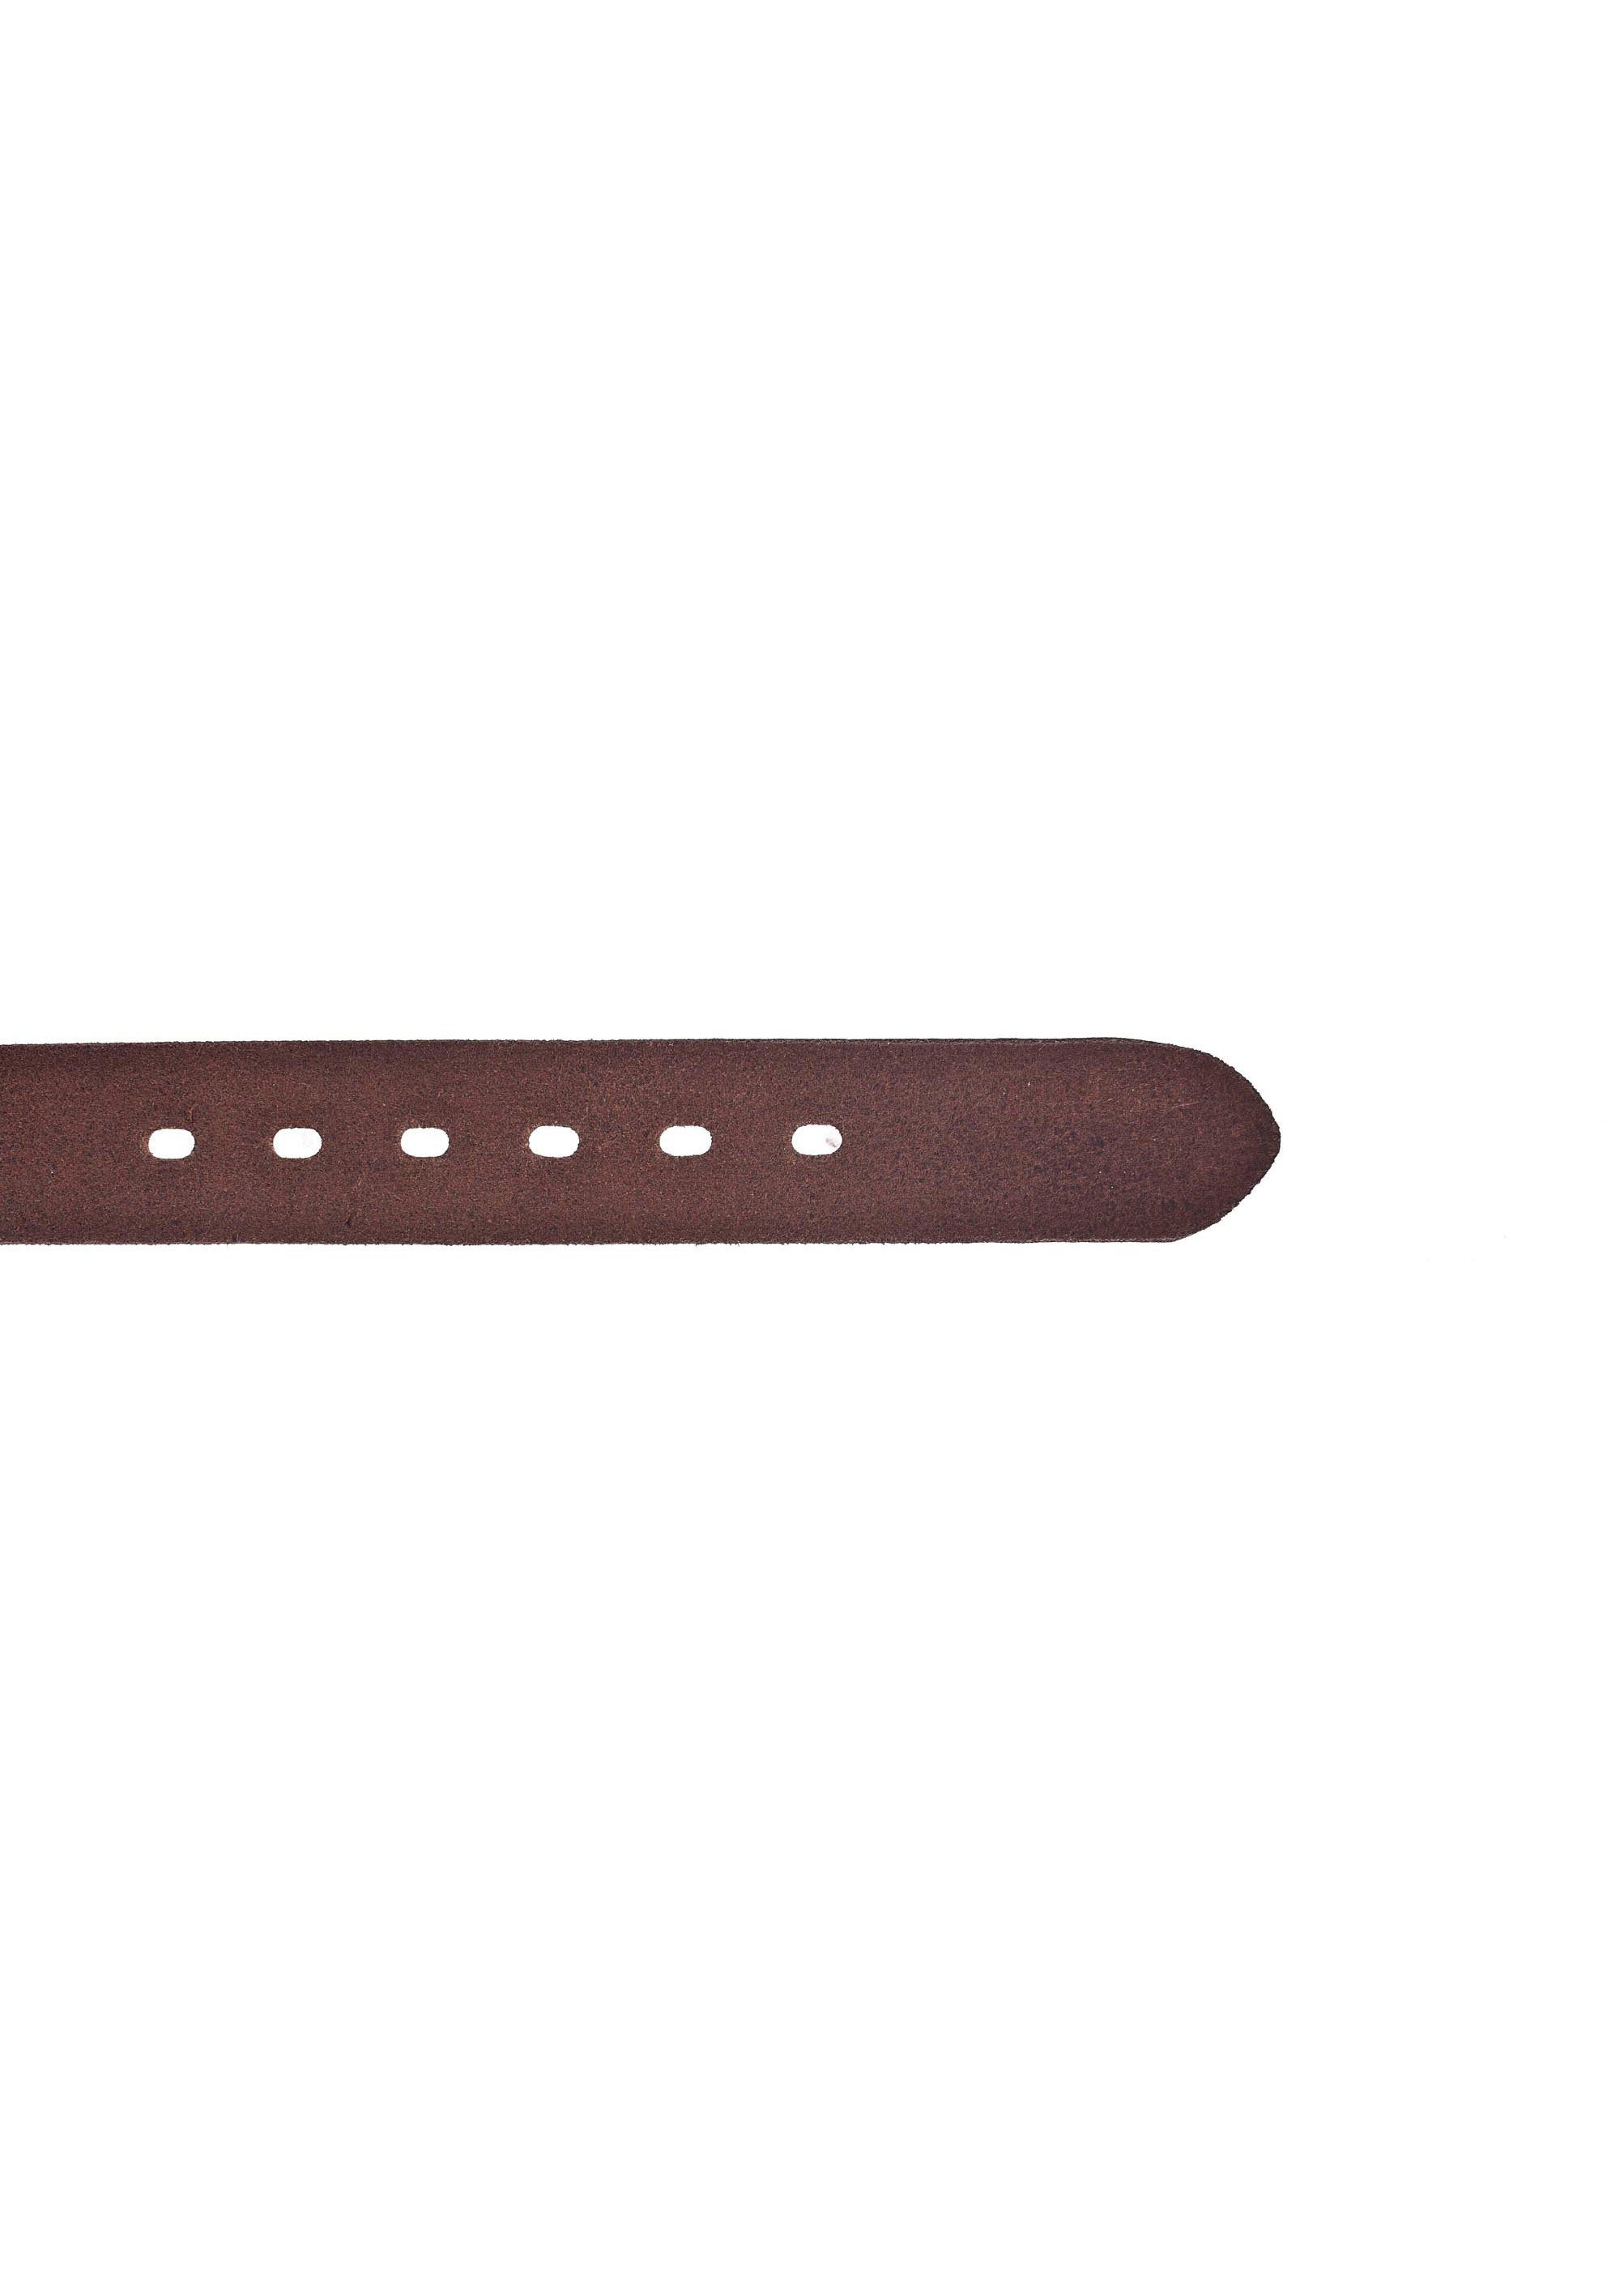 der Spitze Ledergürtel Logo-Blindprägung MUSTANG auf darkbrown